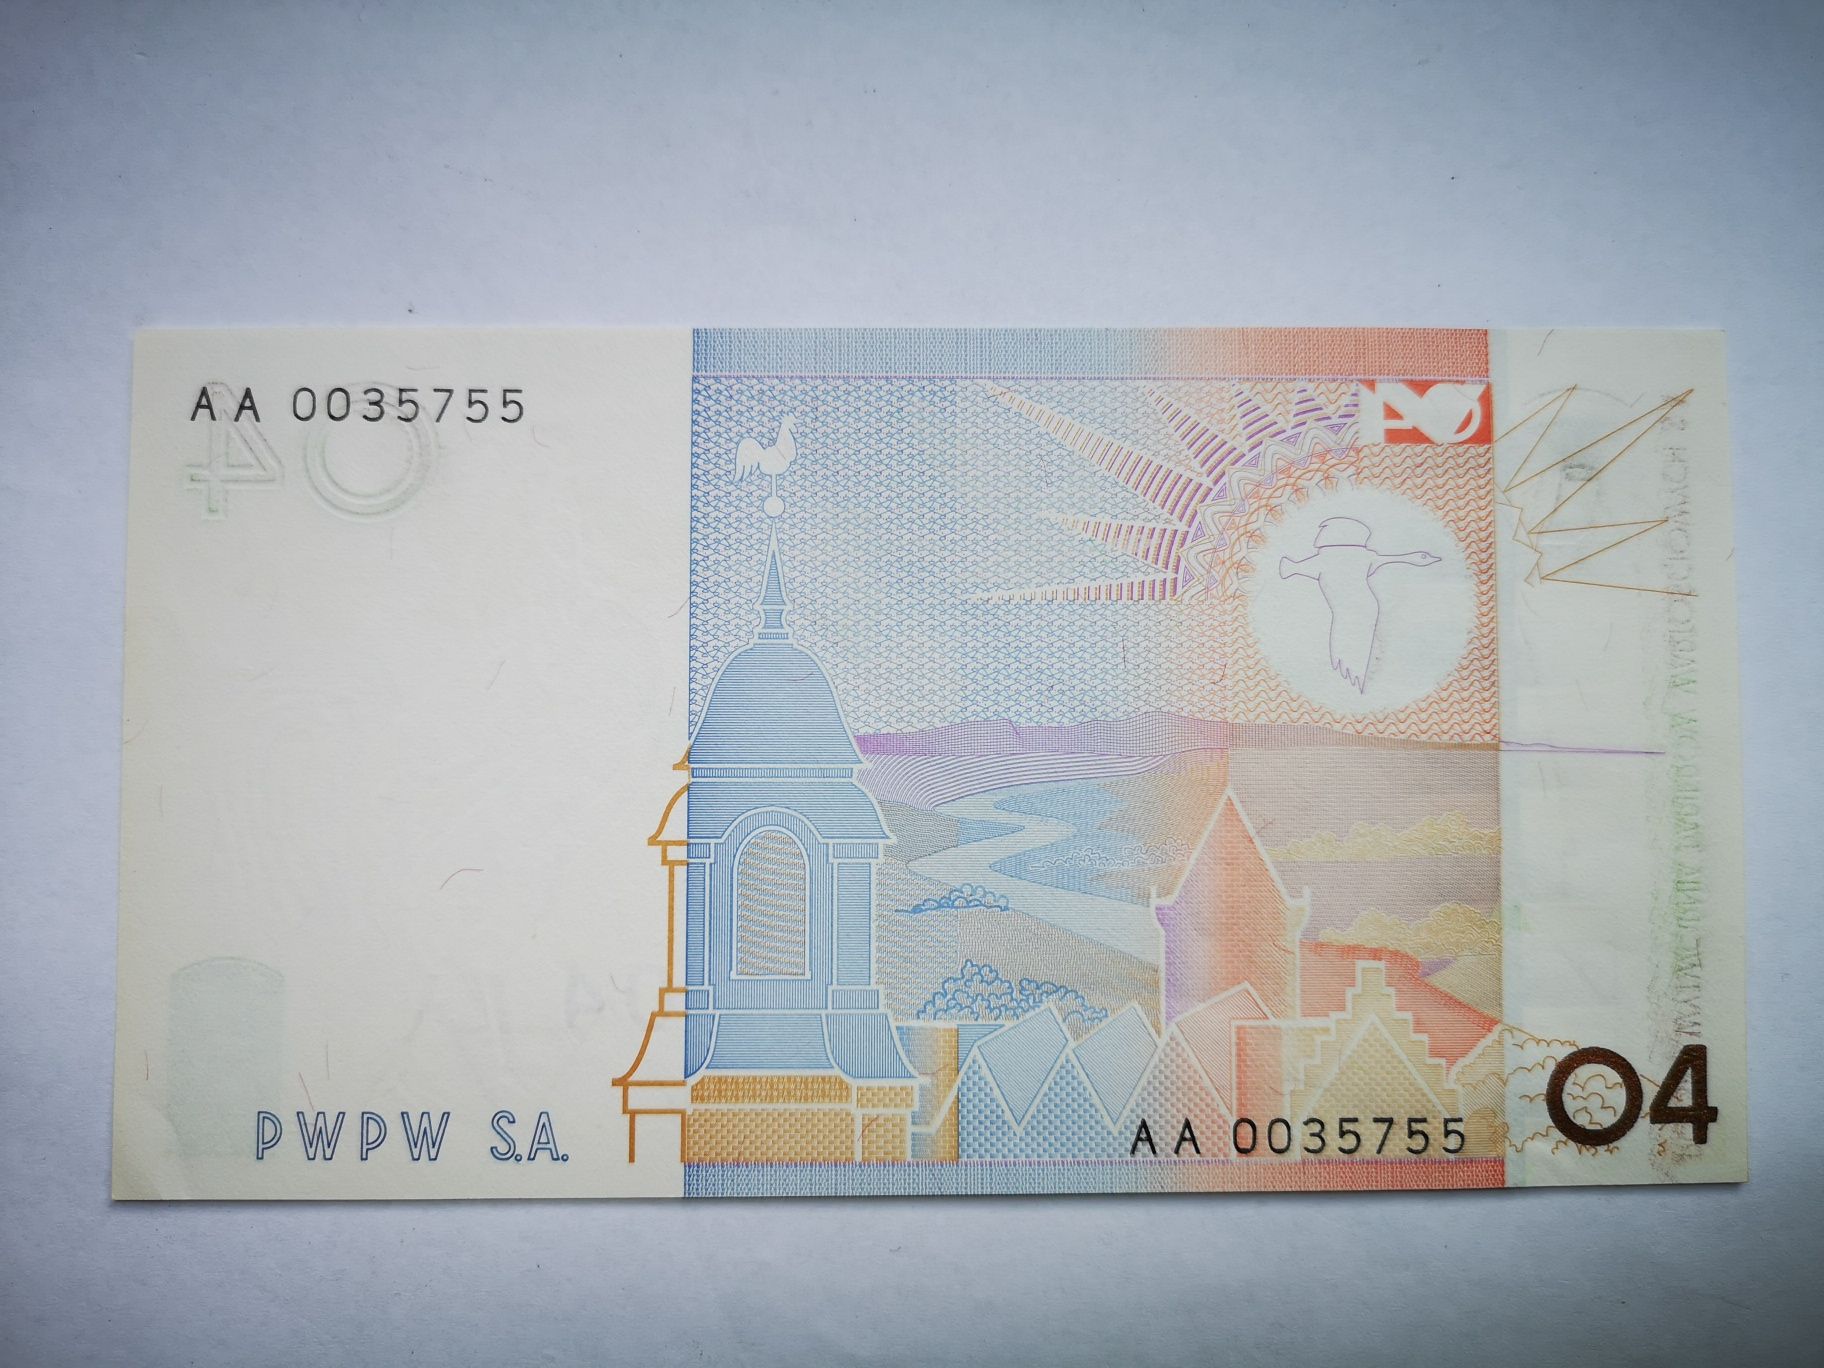 Polska wytwórnia papierów wartościowych Jaskółki banknot testowy krk